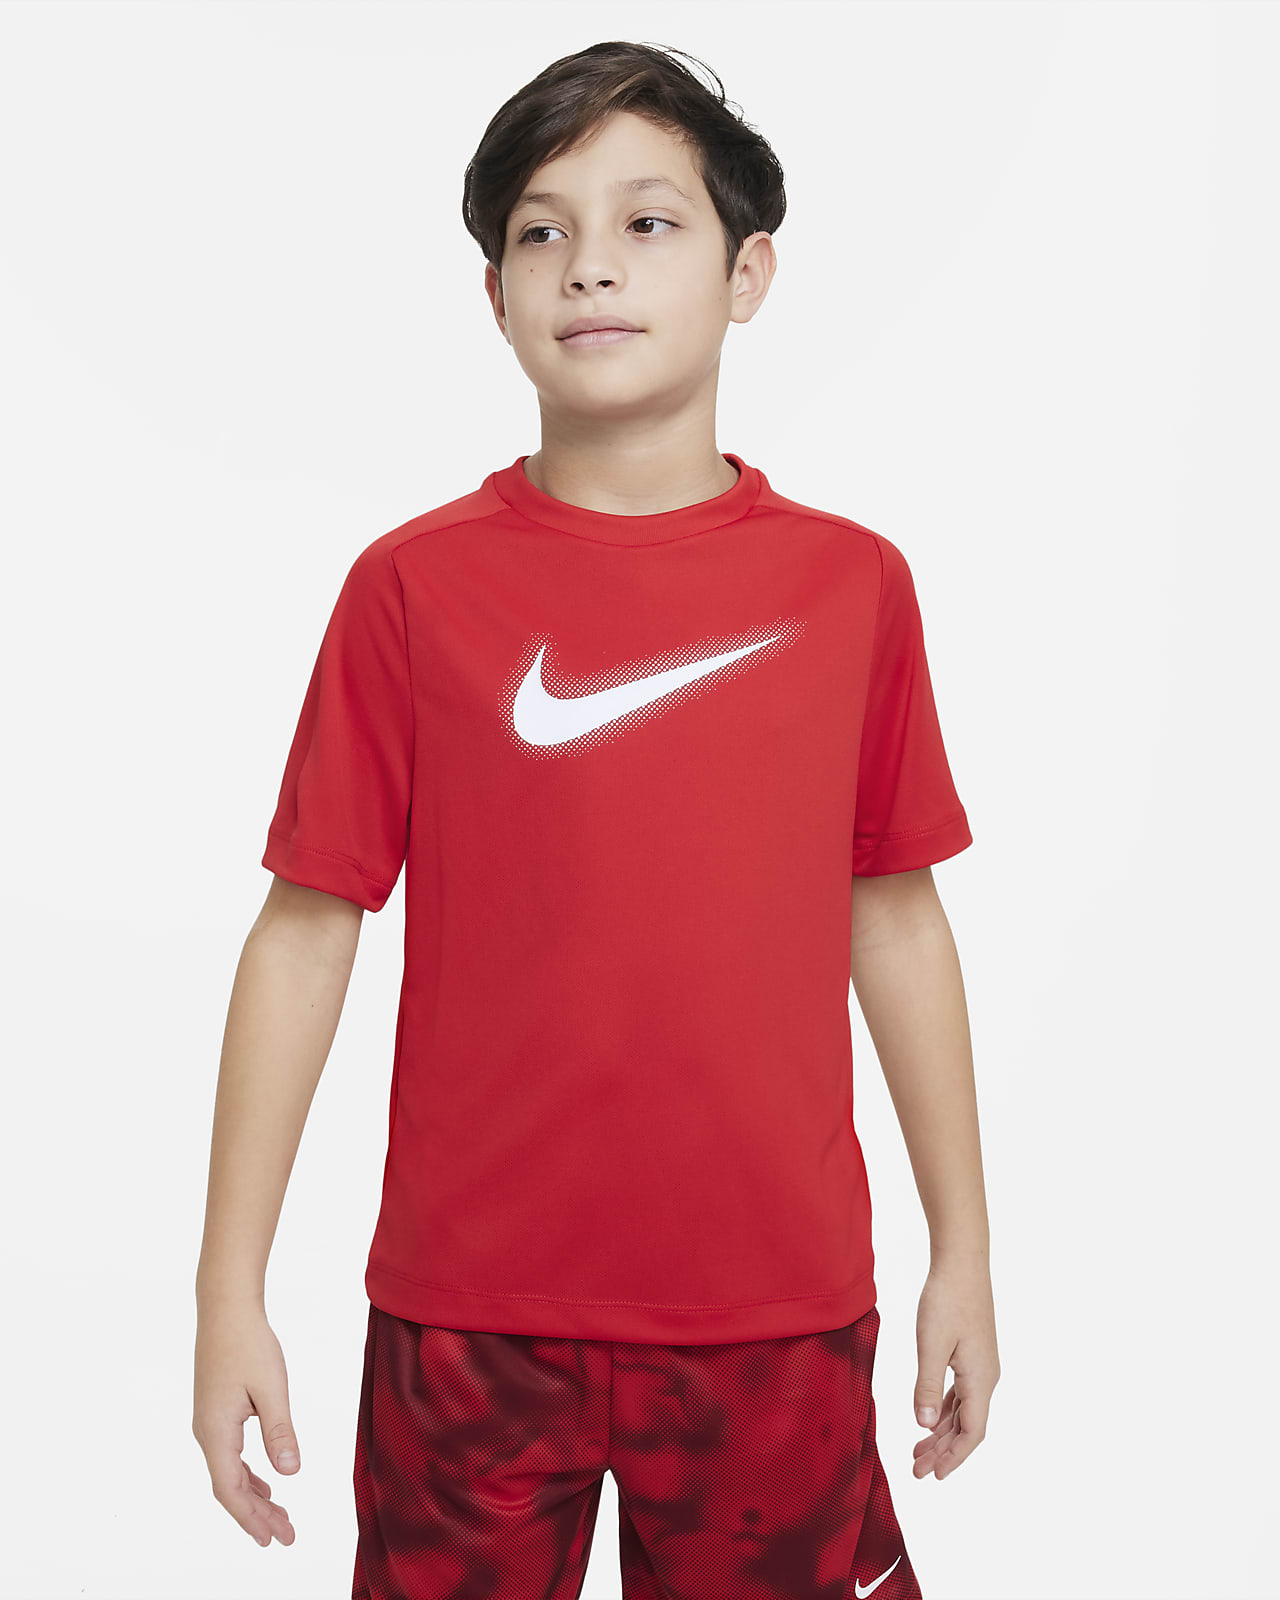 Träningströja med tryck Nike Multi Dri-FIT för ungdom (killar)